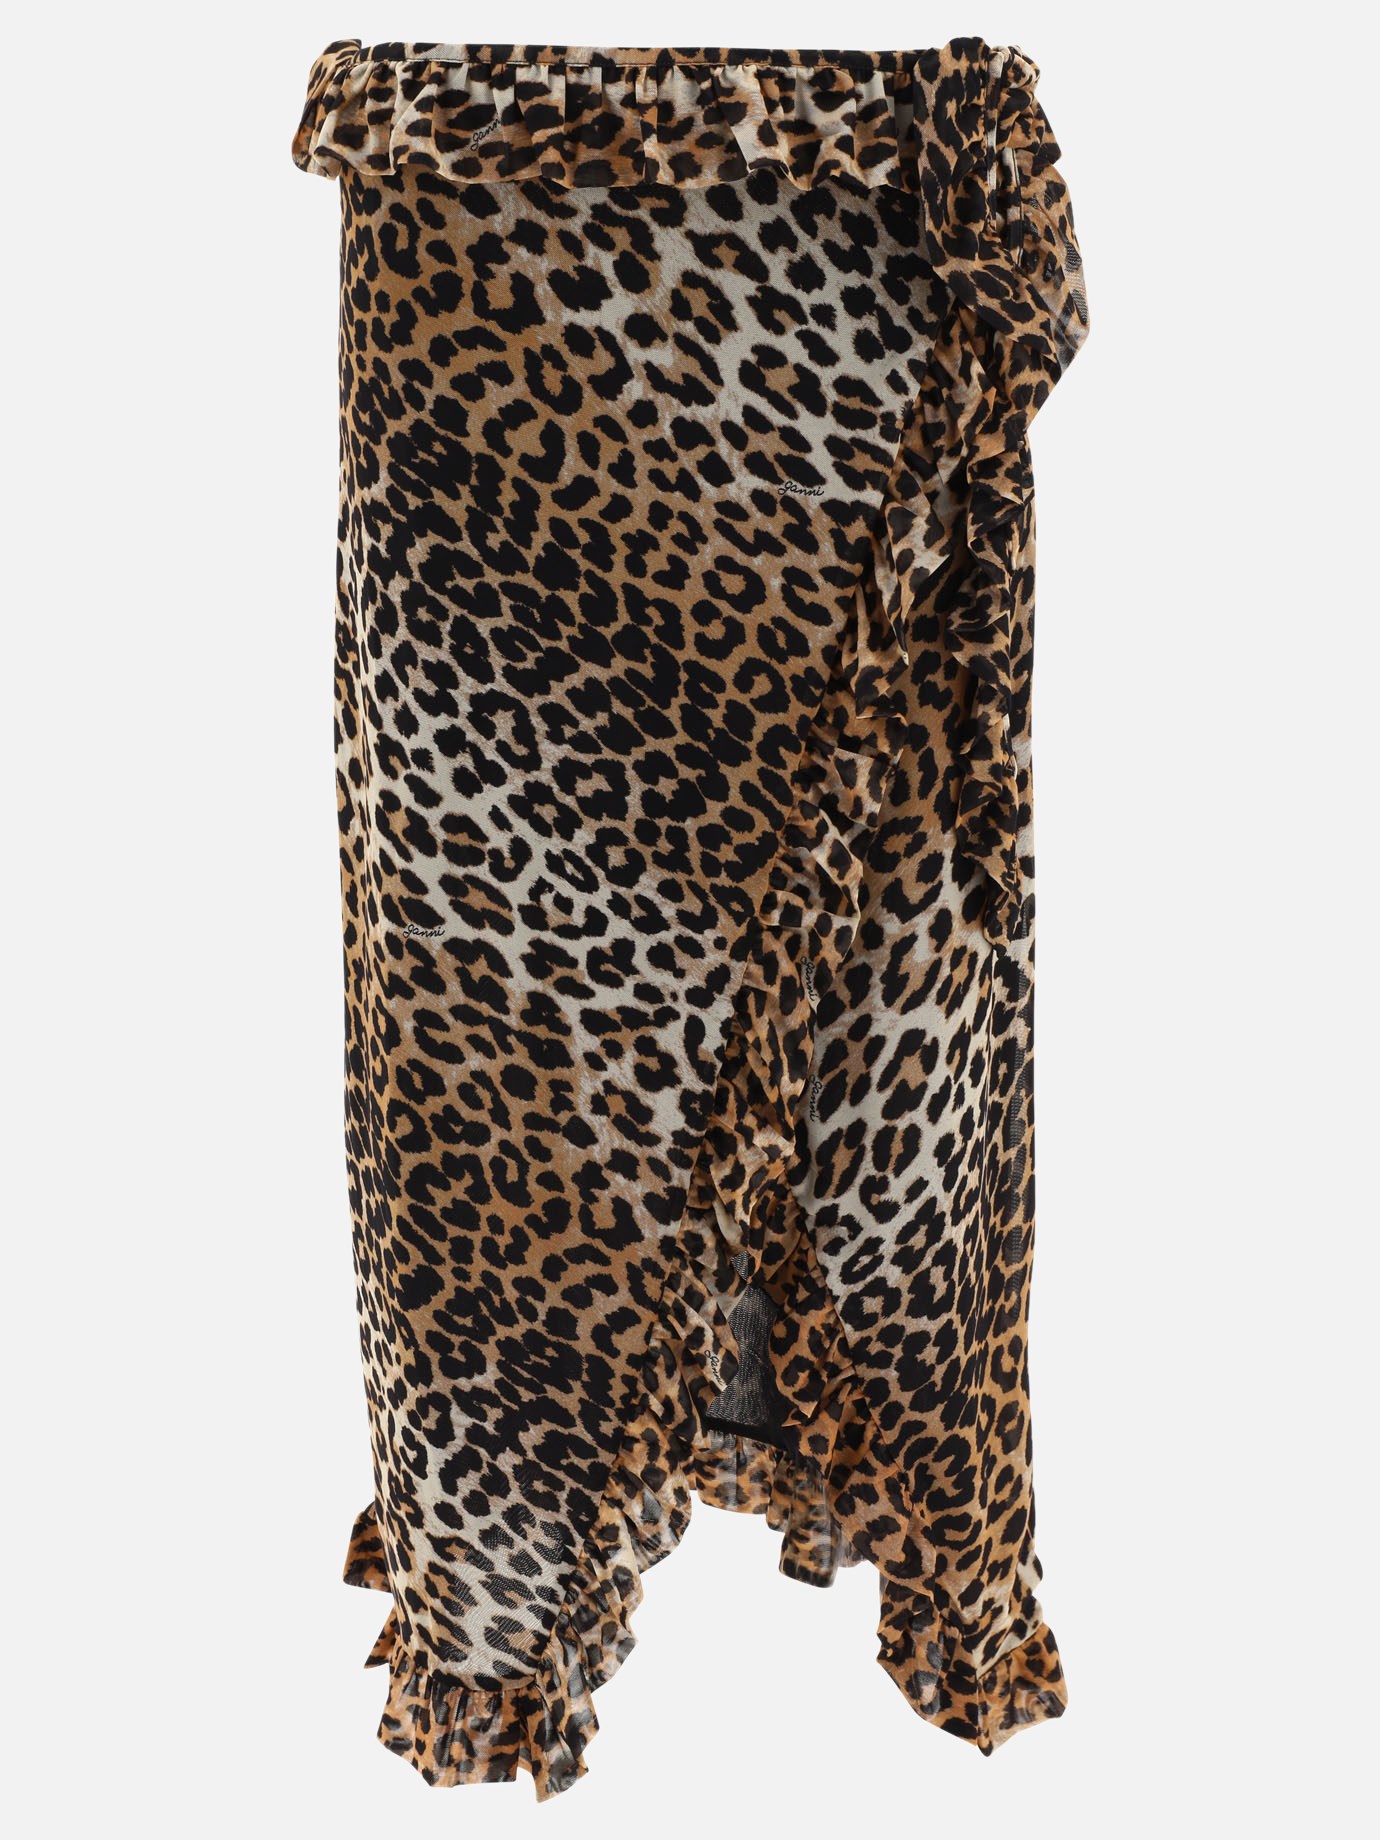 Leopard print wrap skirtby Ganni - 1